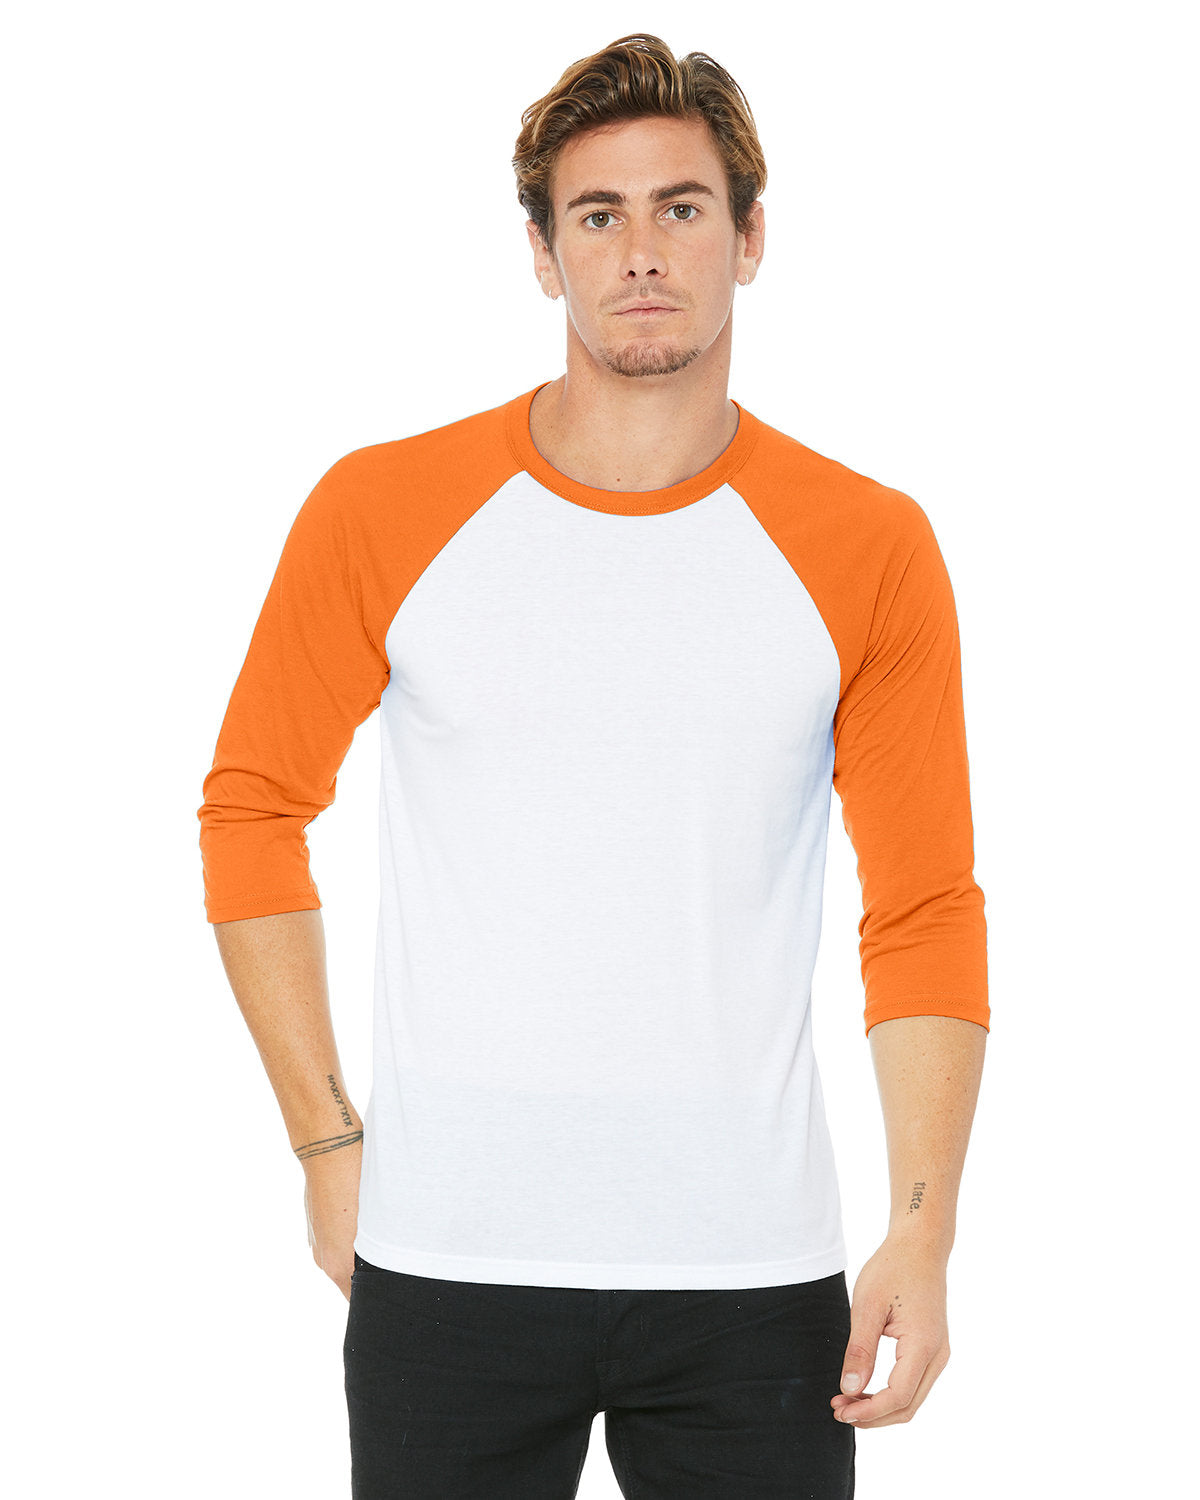 white and orange shirt